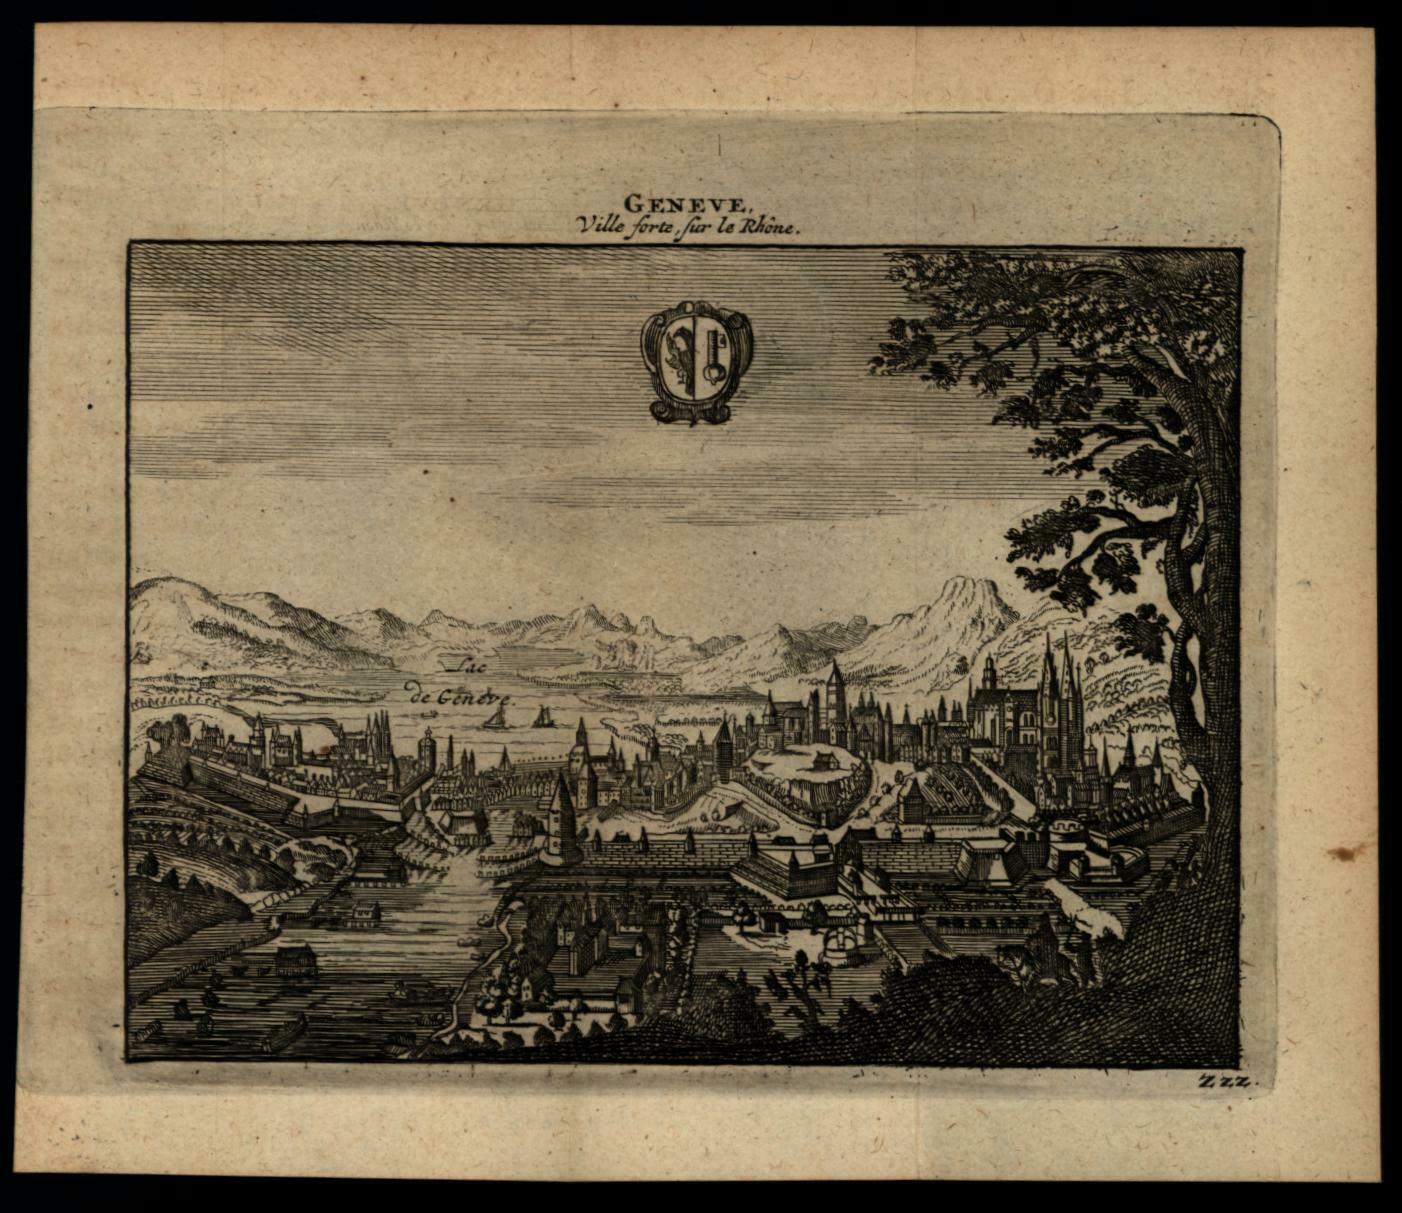 Geneva Switzerland city view c.1680-1700 charming print: (1680) |